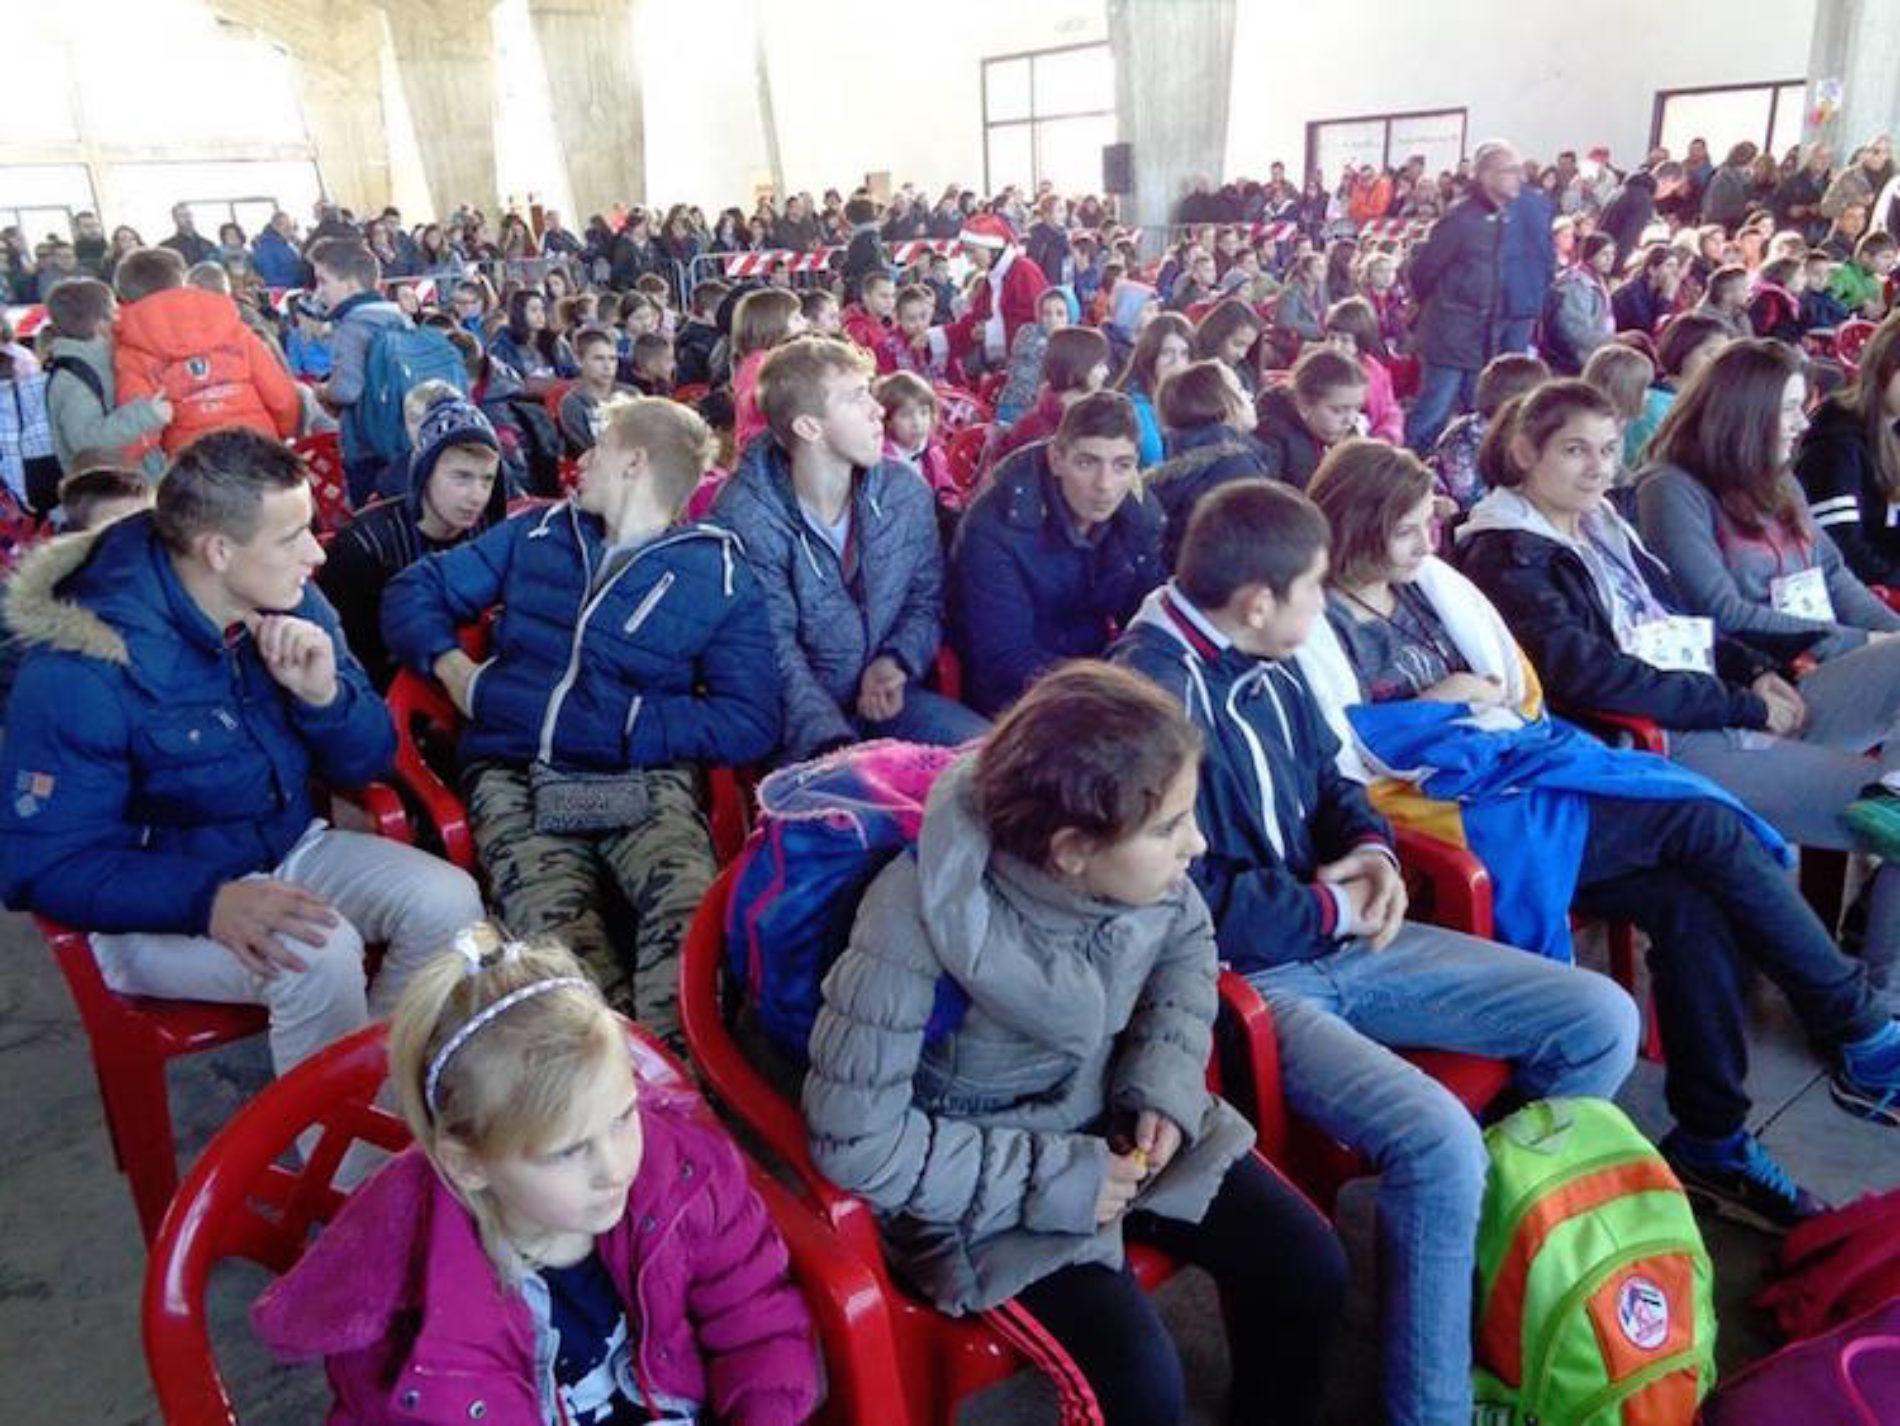 Arrivano a Enna duecento bambini bosniaci che saranno accolti da famiglie siciliane